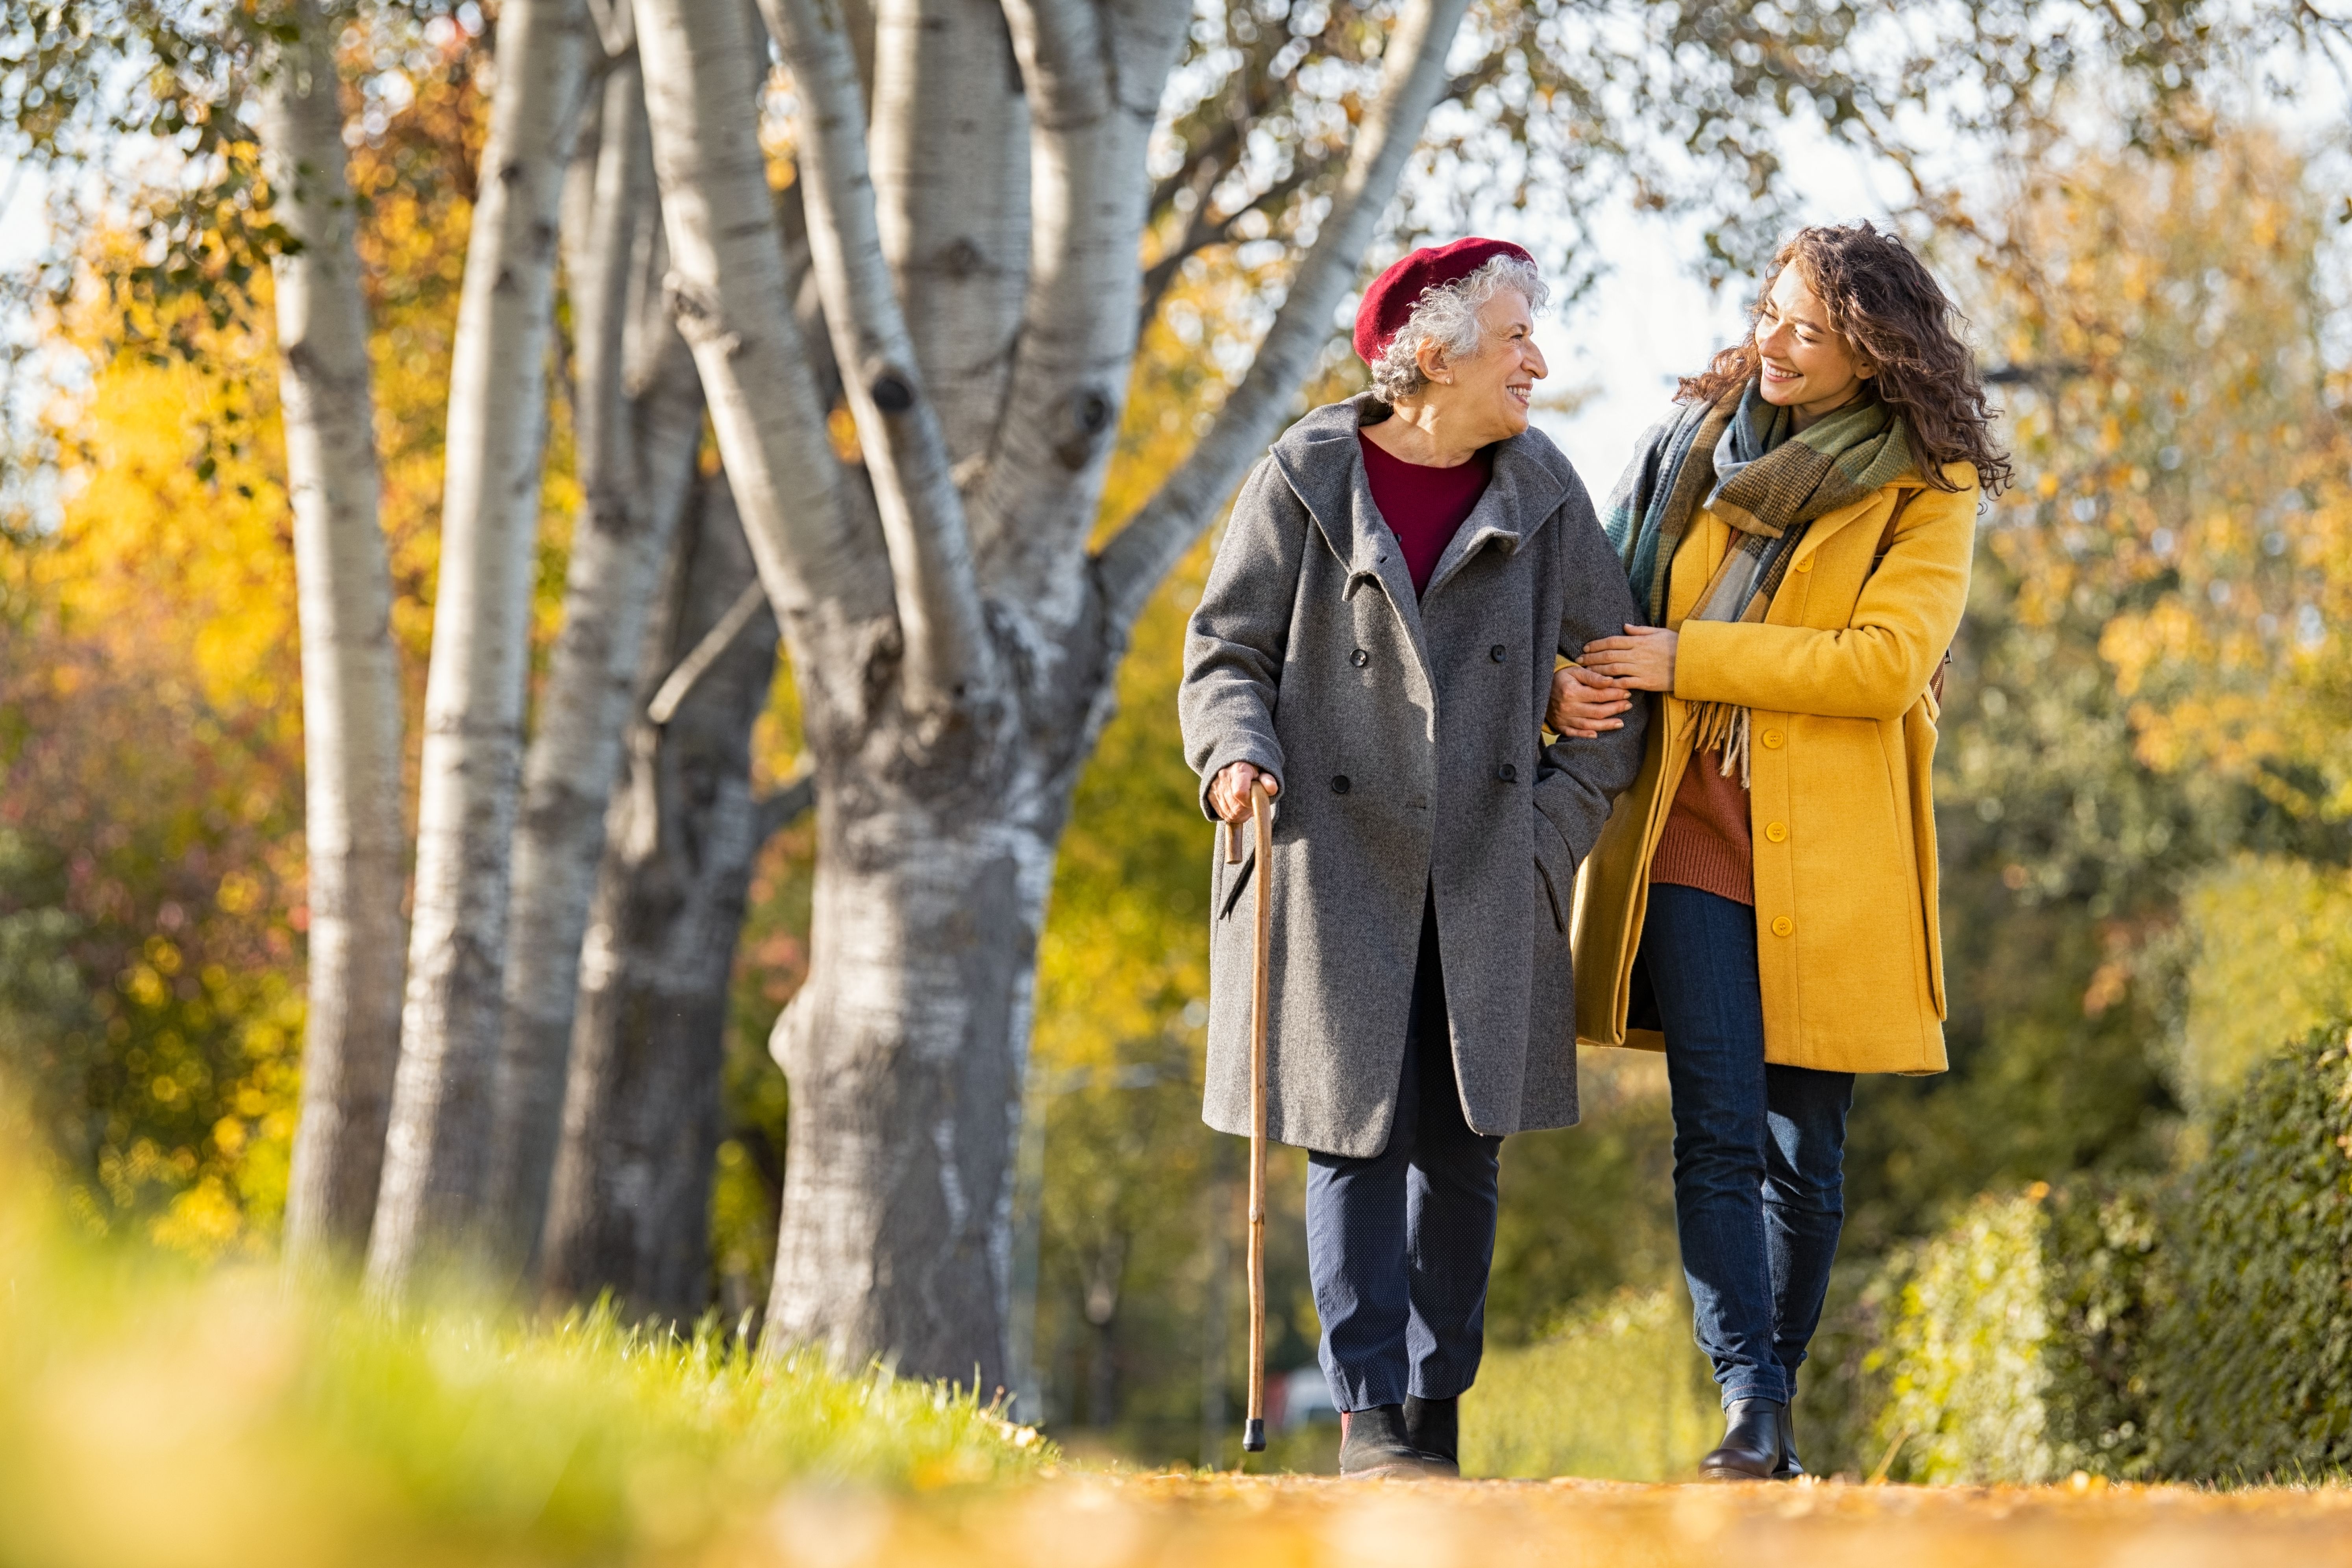 La salud y la regulación emocional mejoran con la edad, según un estudio. Foto: Bigstock